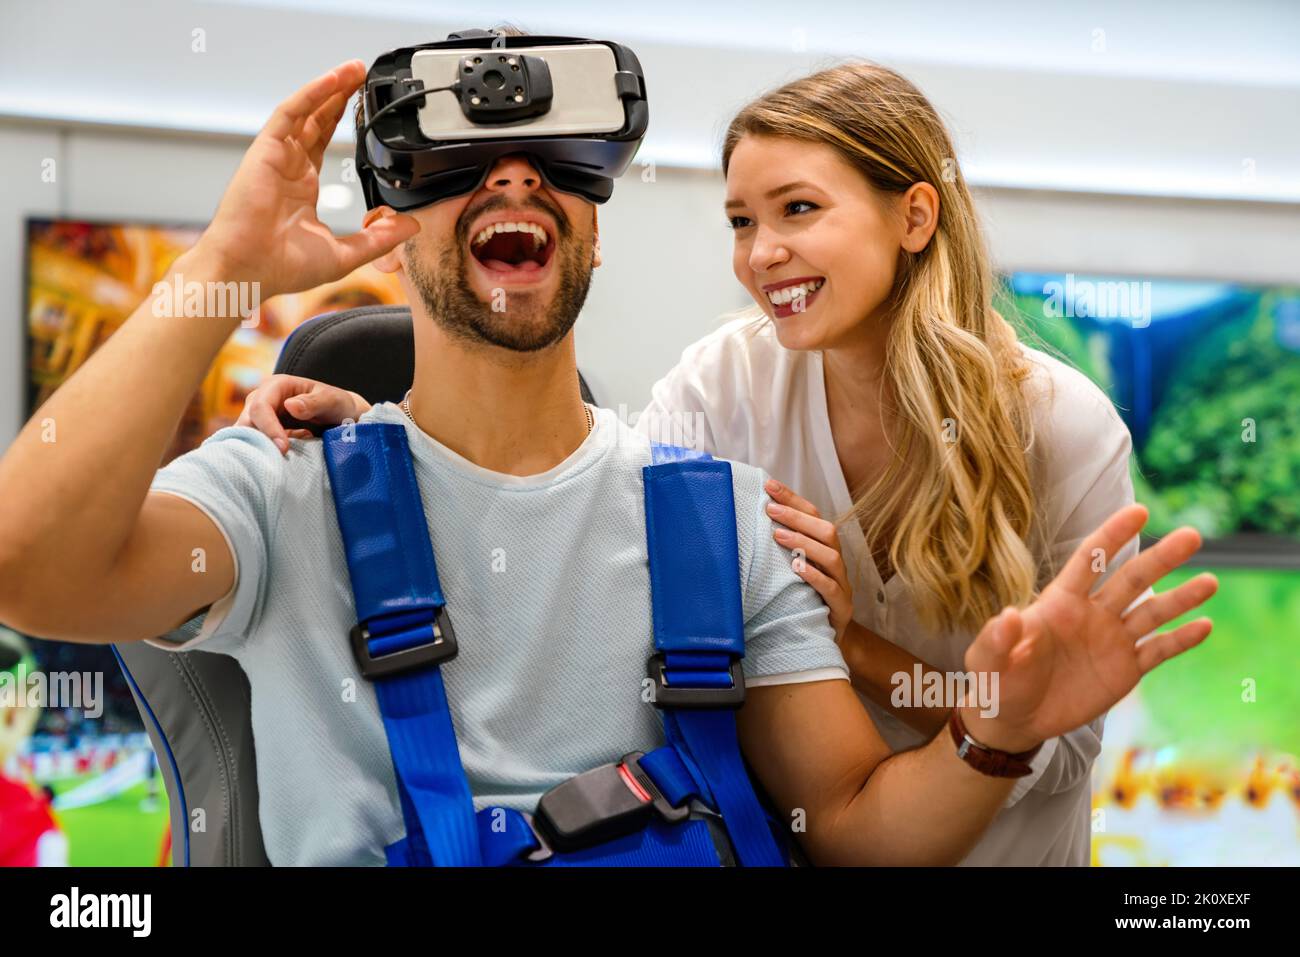 Groupe de personnes utilisant des micro-casques de réalité virtuelle lors d'expositions, de spectacles.Concept de simulation de la technologie VR Banque D'Images